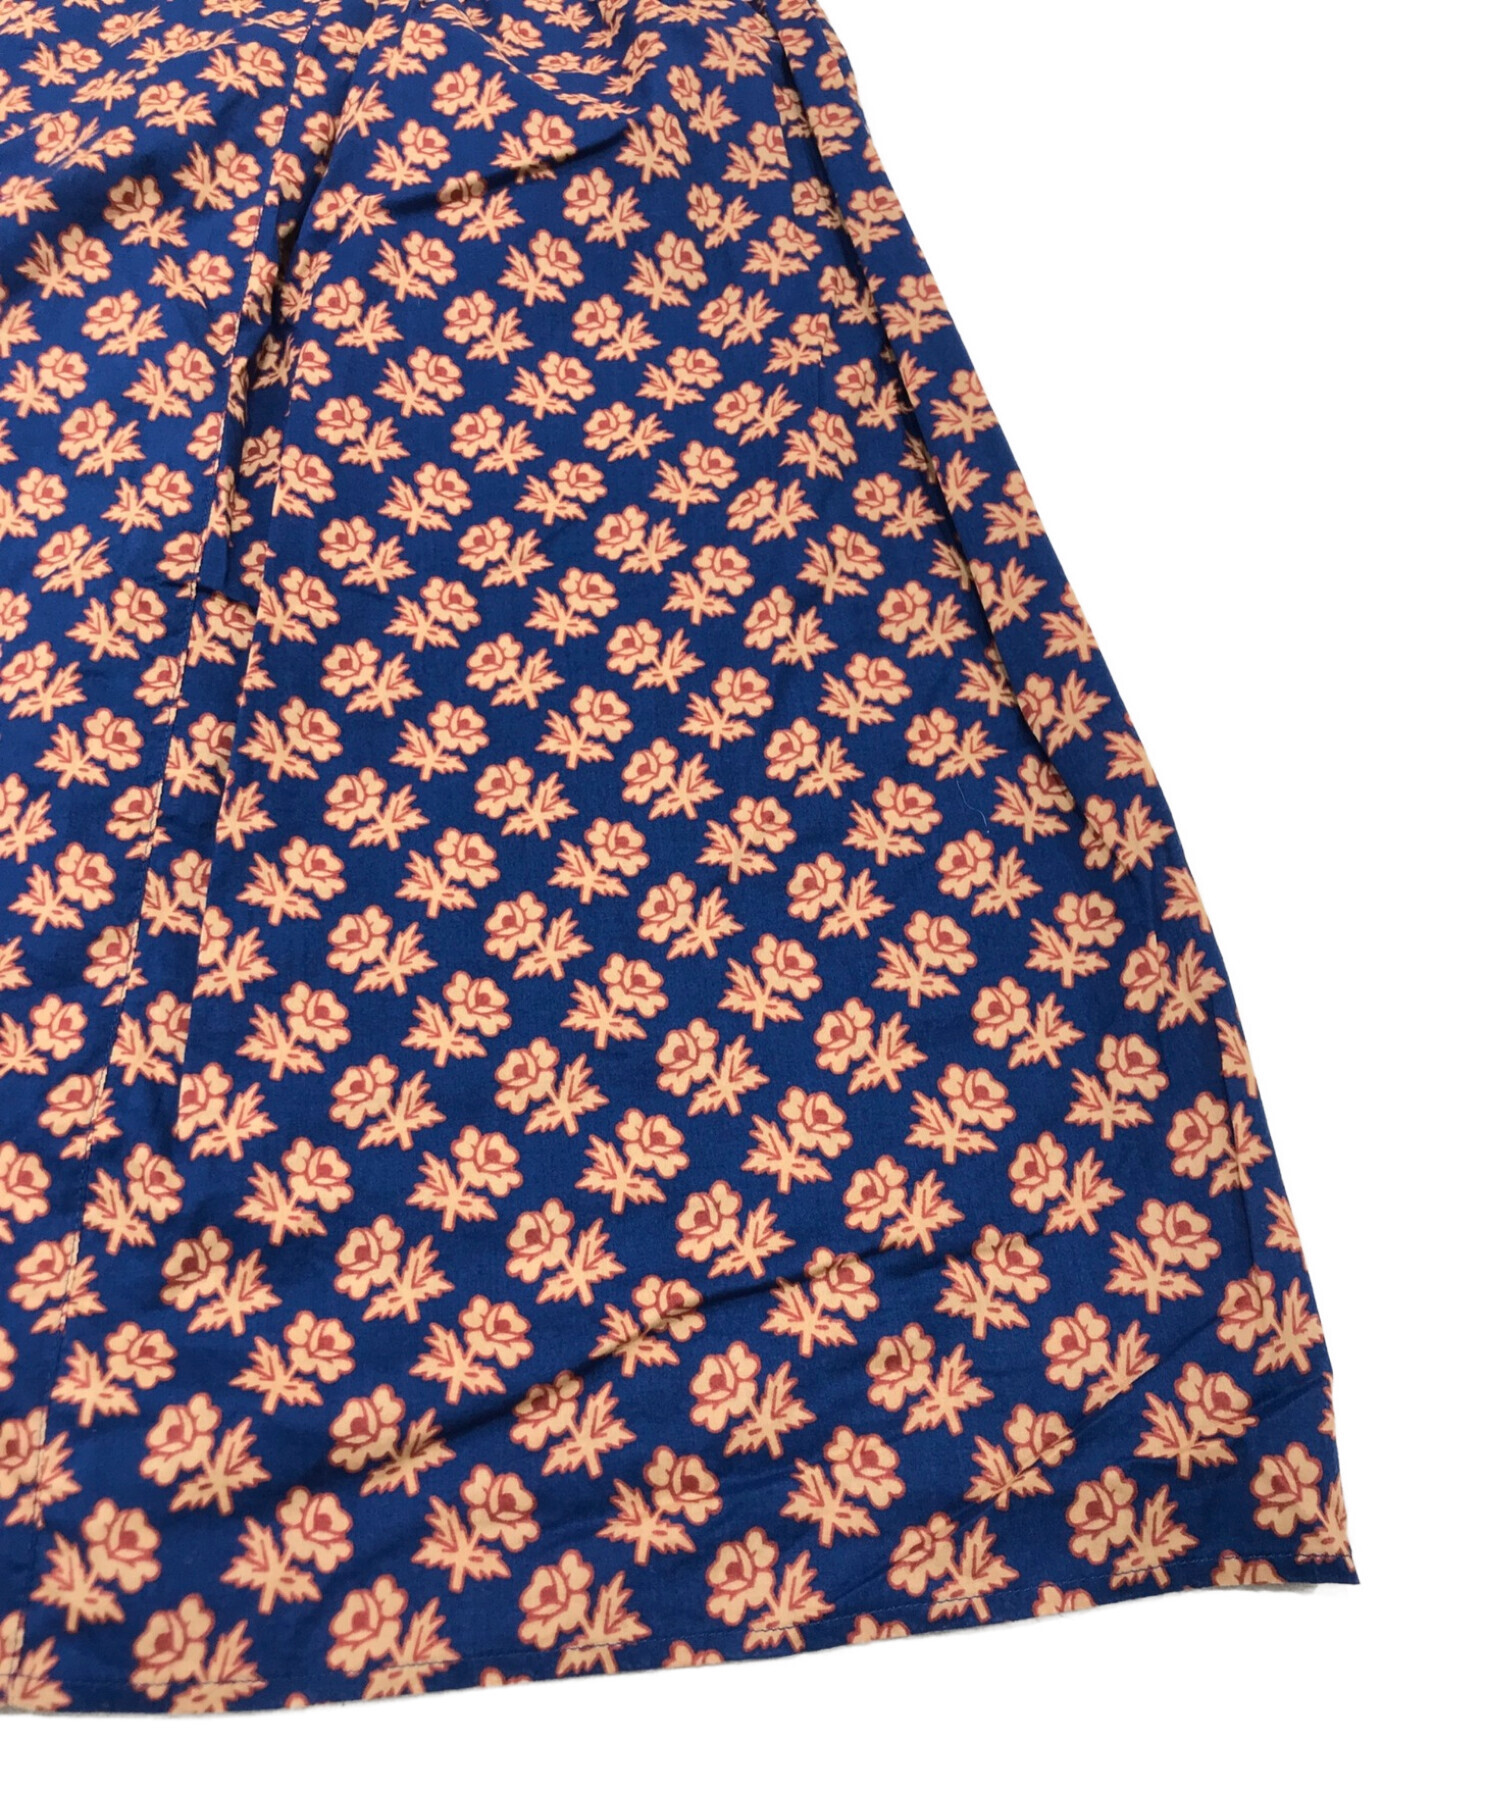 MACPHEE (マカフィー) コットンリバティプリント ギャザーマキシスカート オレンジ×ネイビー サイズ:36